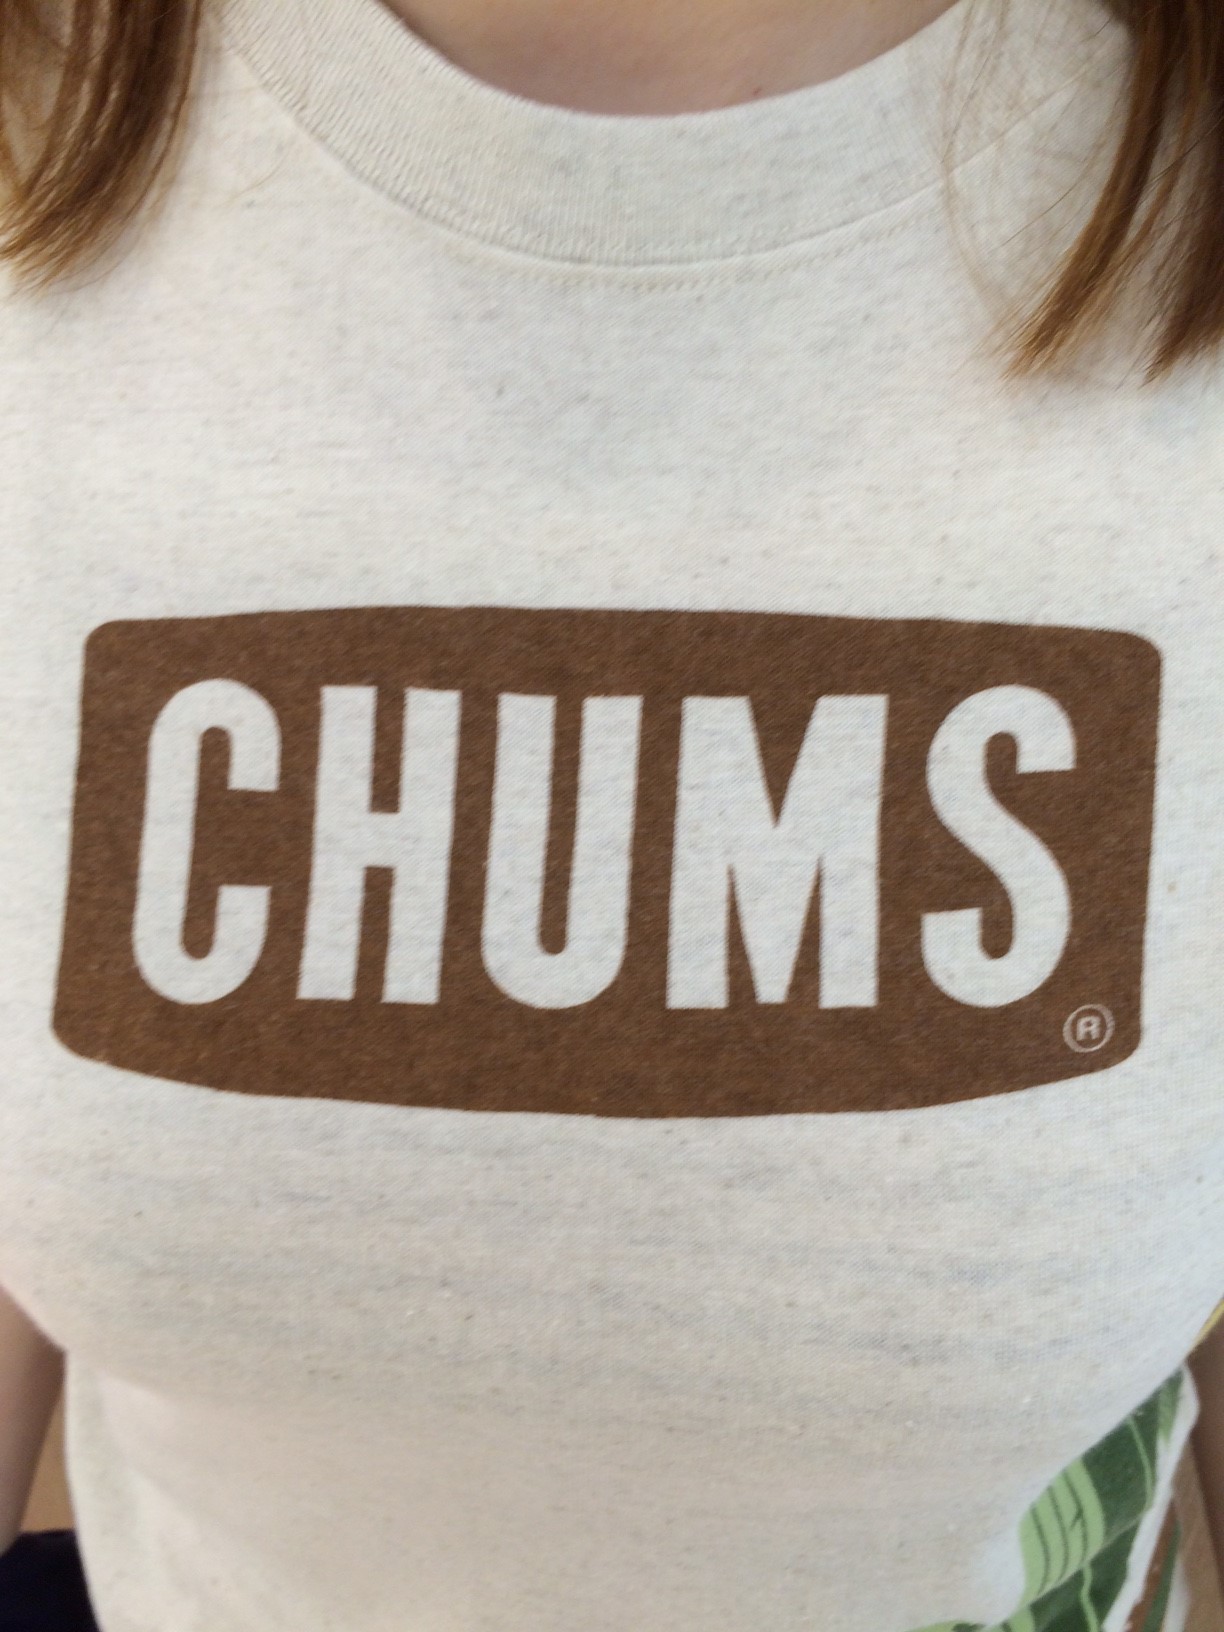 Chumsおすすめtシャツ バーニッシュカンパニーブログ